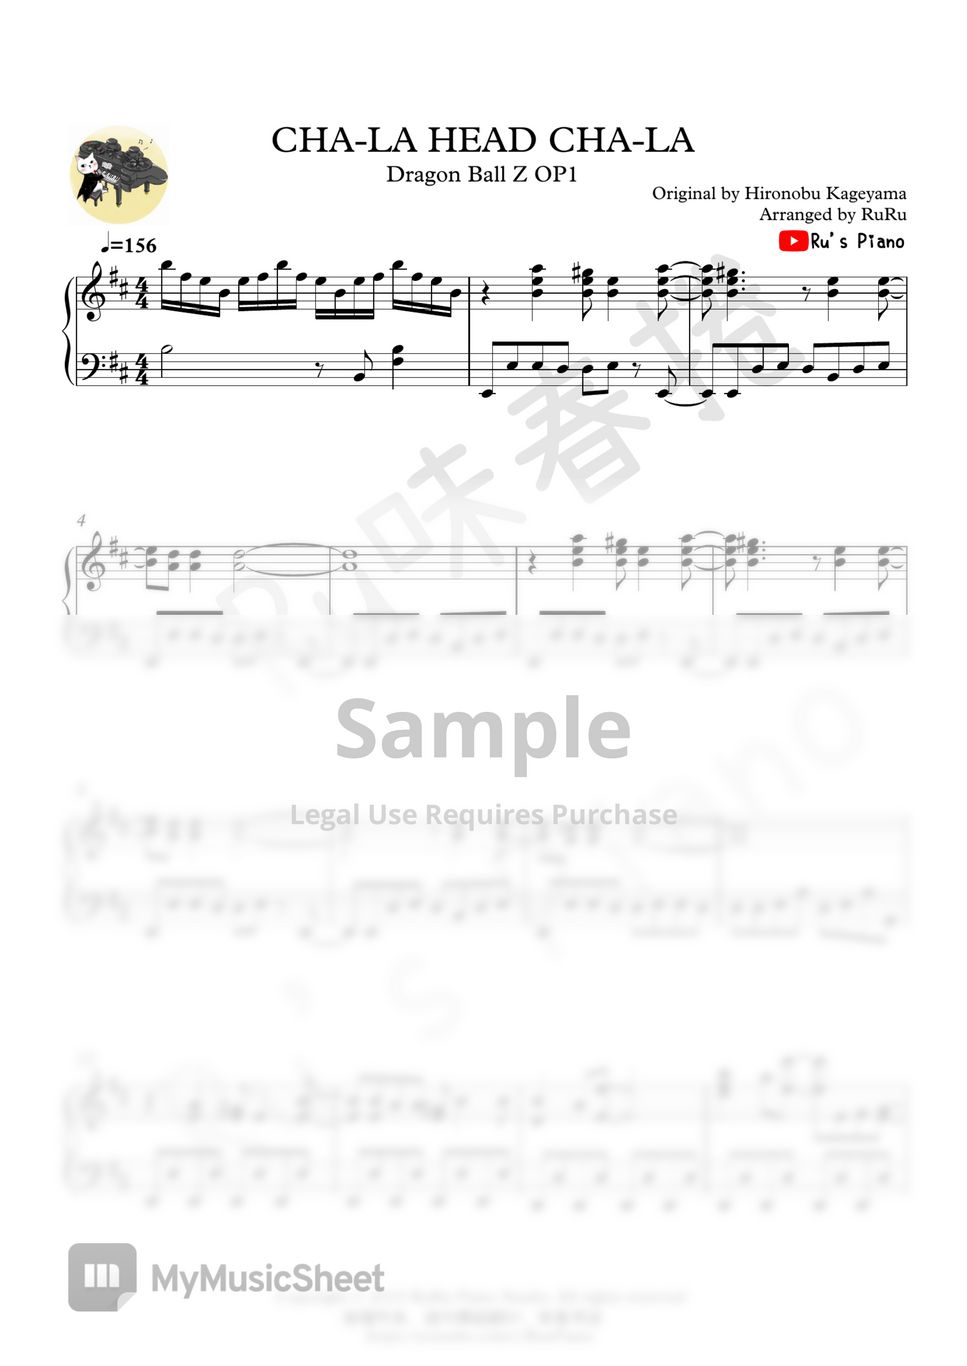 Dragon Ball Z OP1 - 「CHA-LA HEAD CHA-LA」 by Ru's Piano